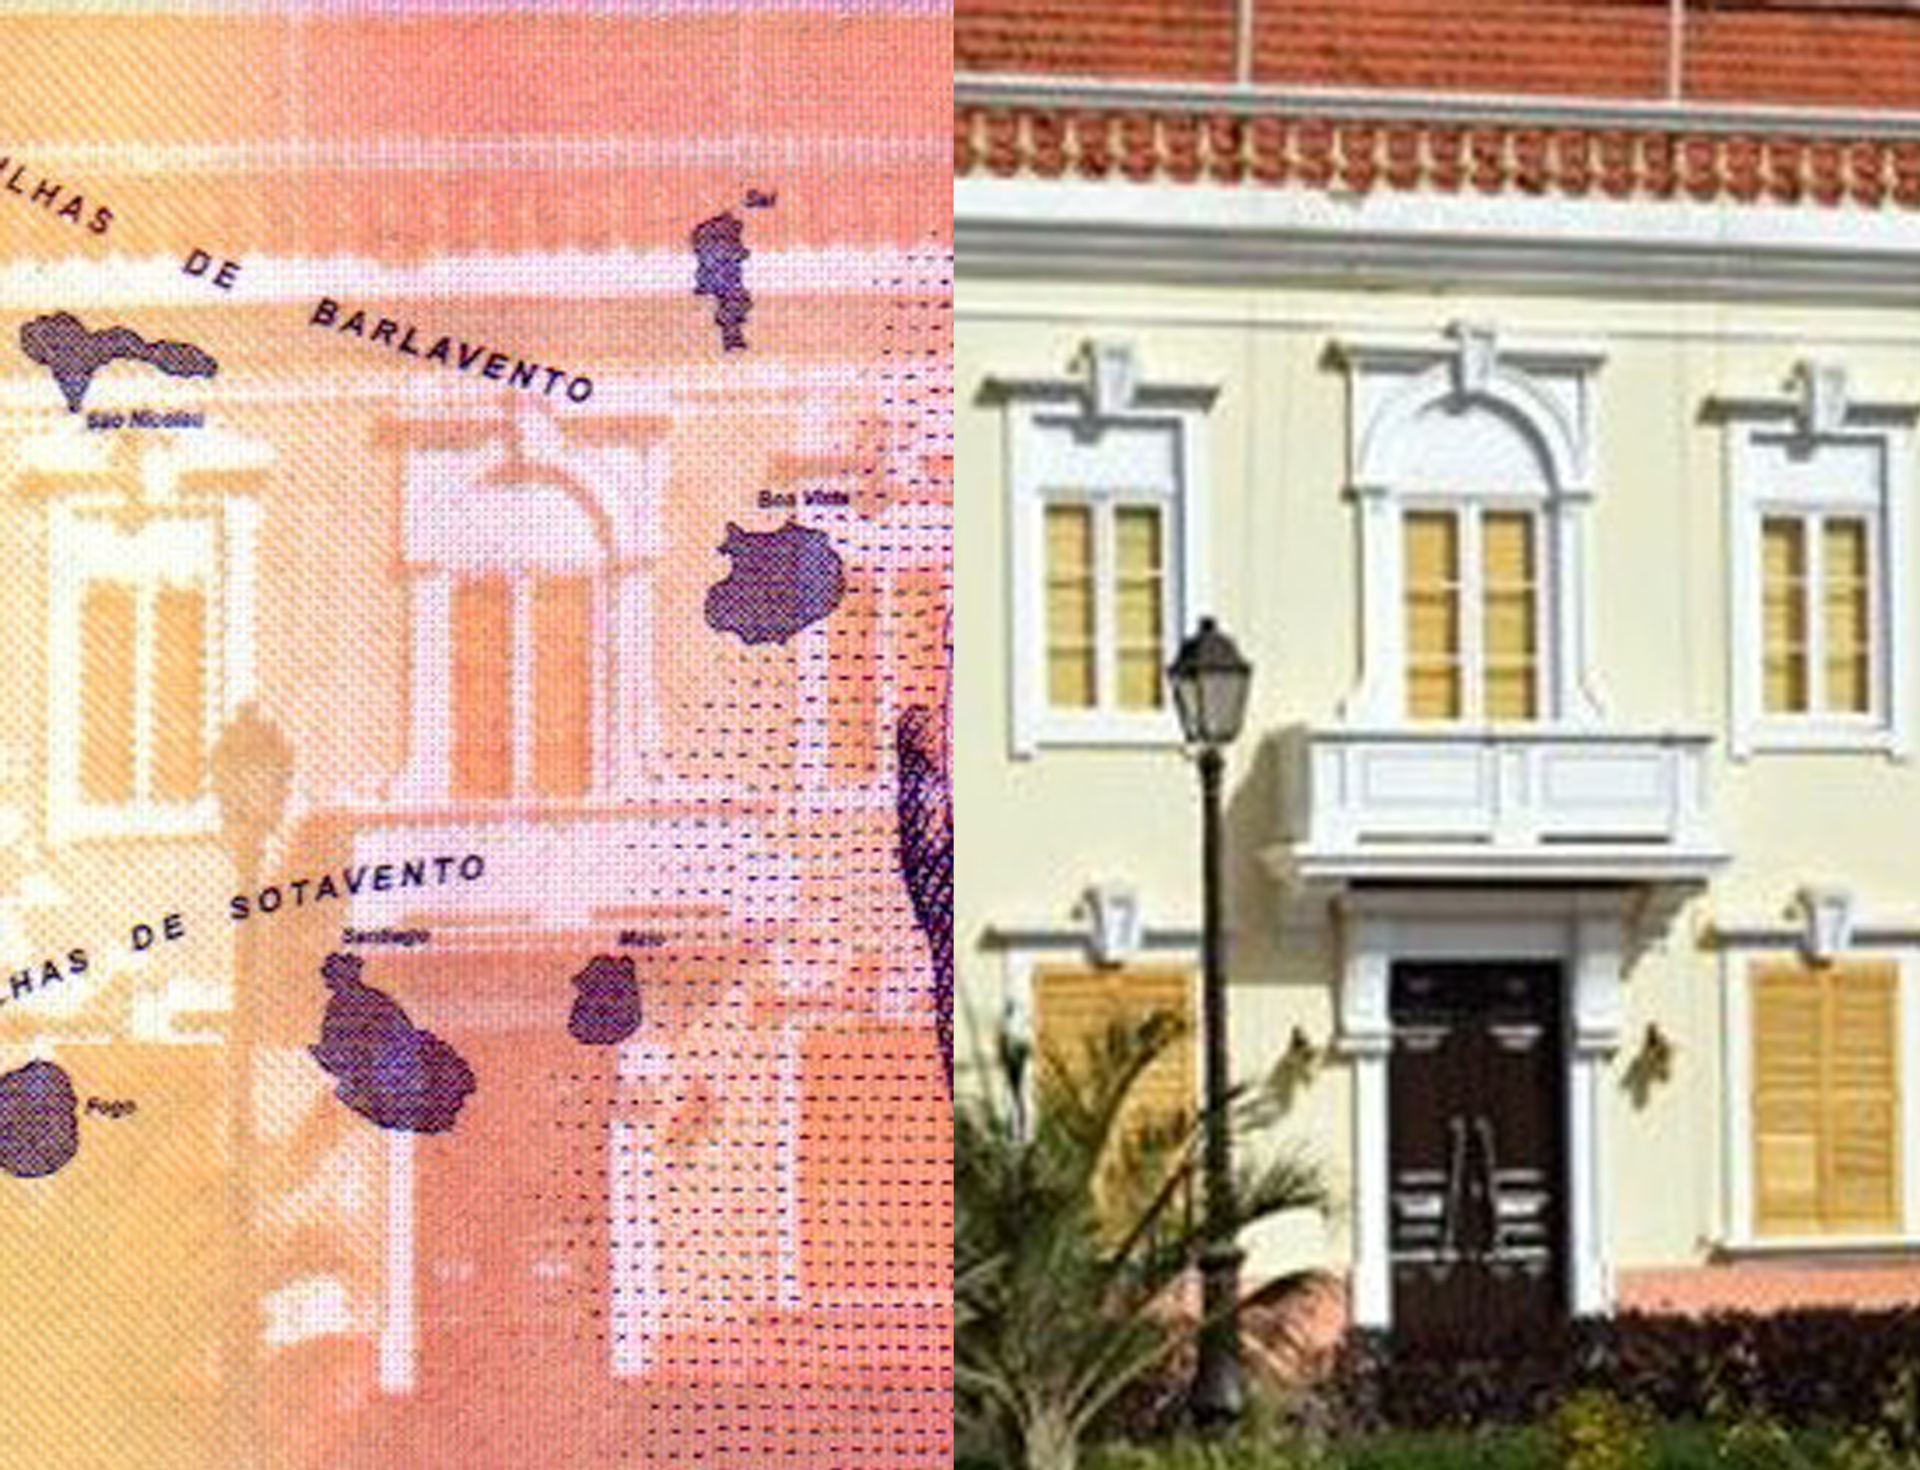 Obrázek 4 A) Část vstupní fasády prezidentského paláce v Praia, ostrov Santiágo, ve výřezu aversu bankovky P-75. B) Fotografická předloha (výřez). Autor: ND, převzato z: http://atlantico-weekly.com /2012/08/